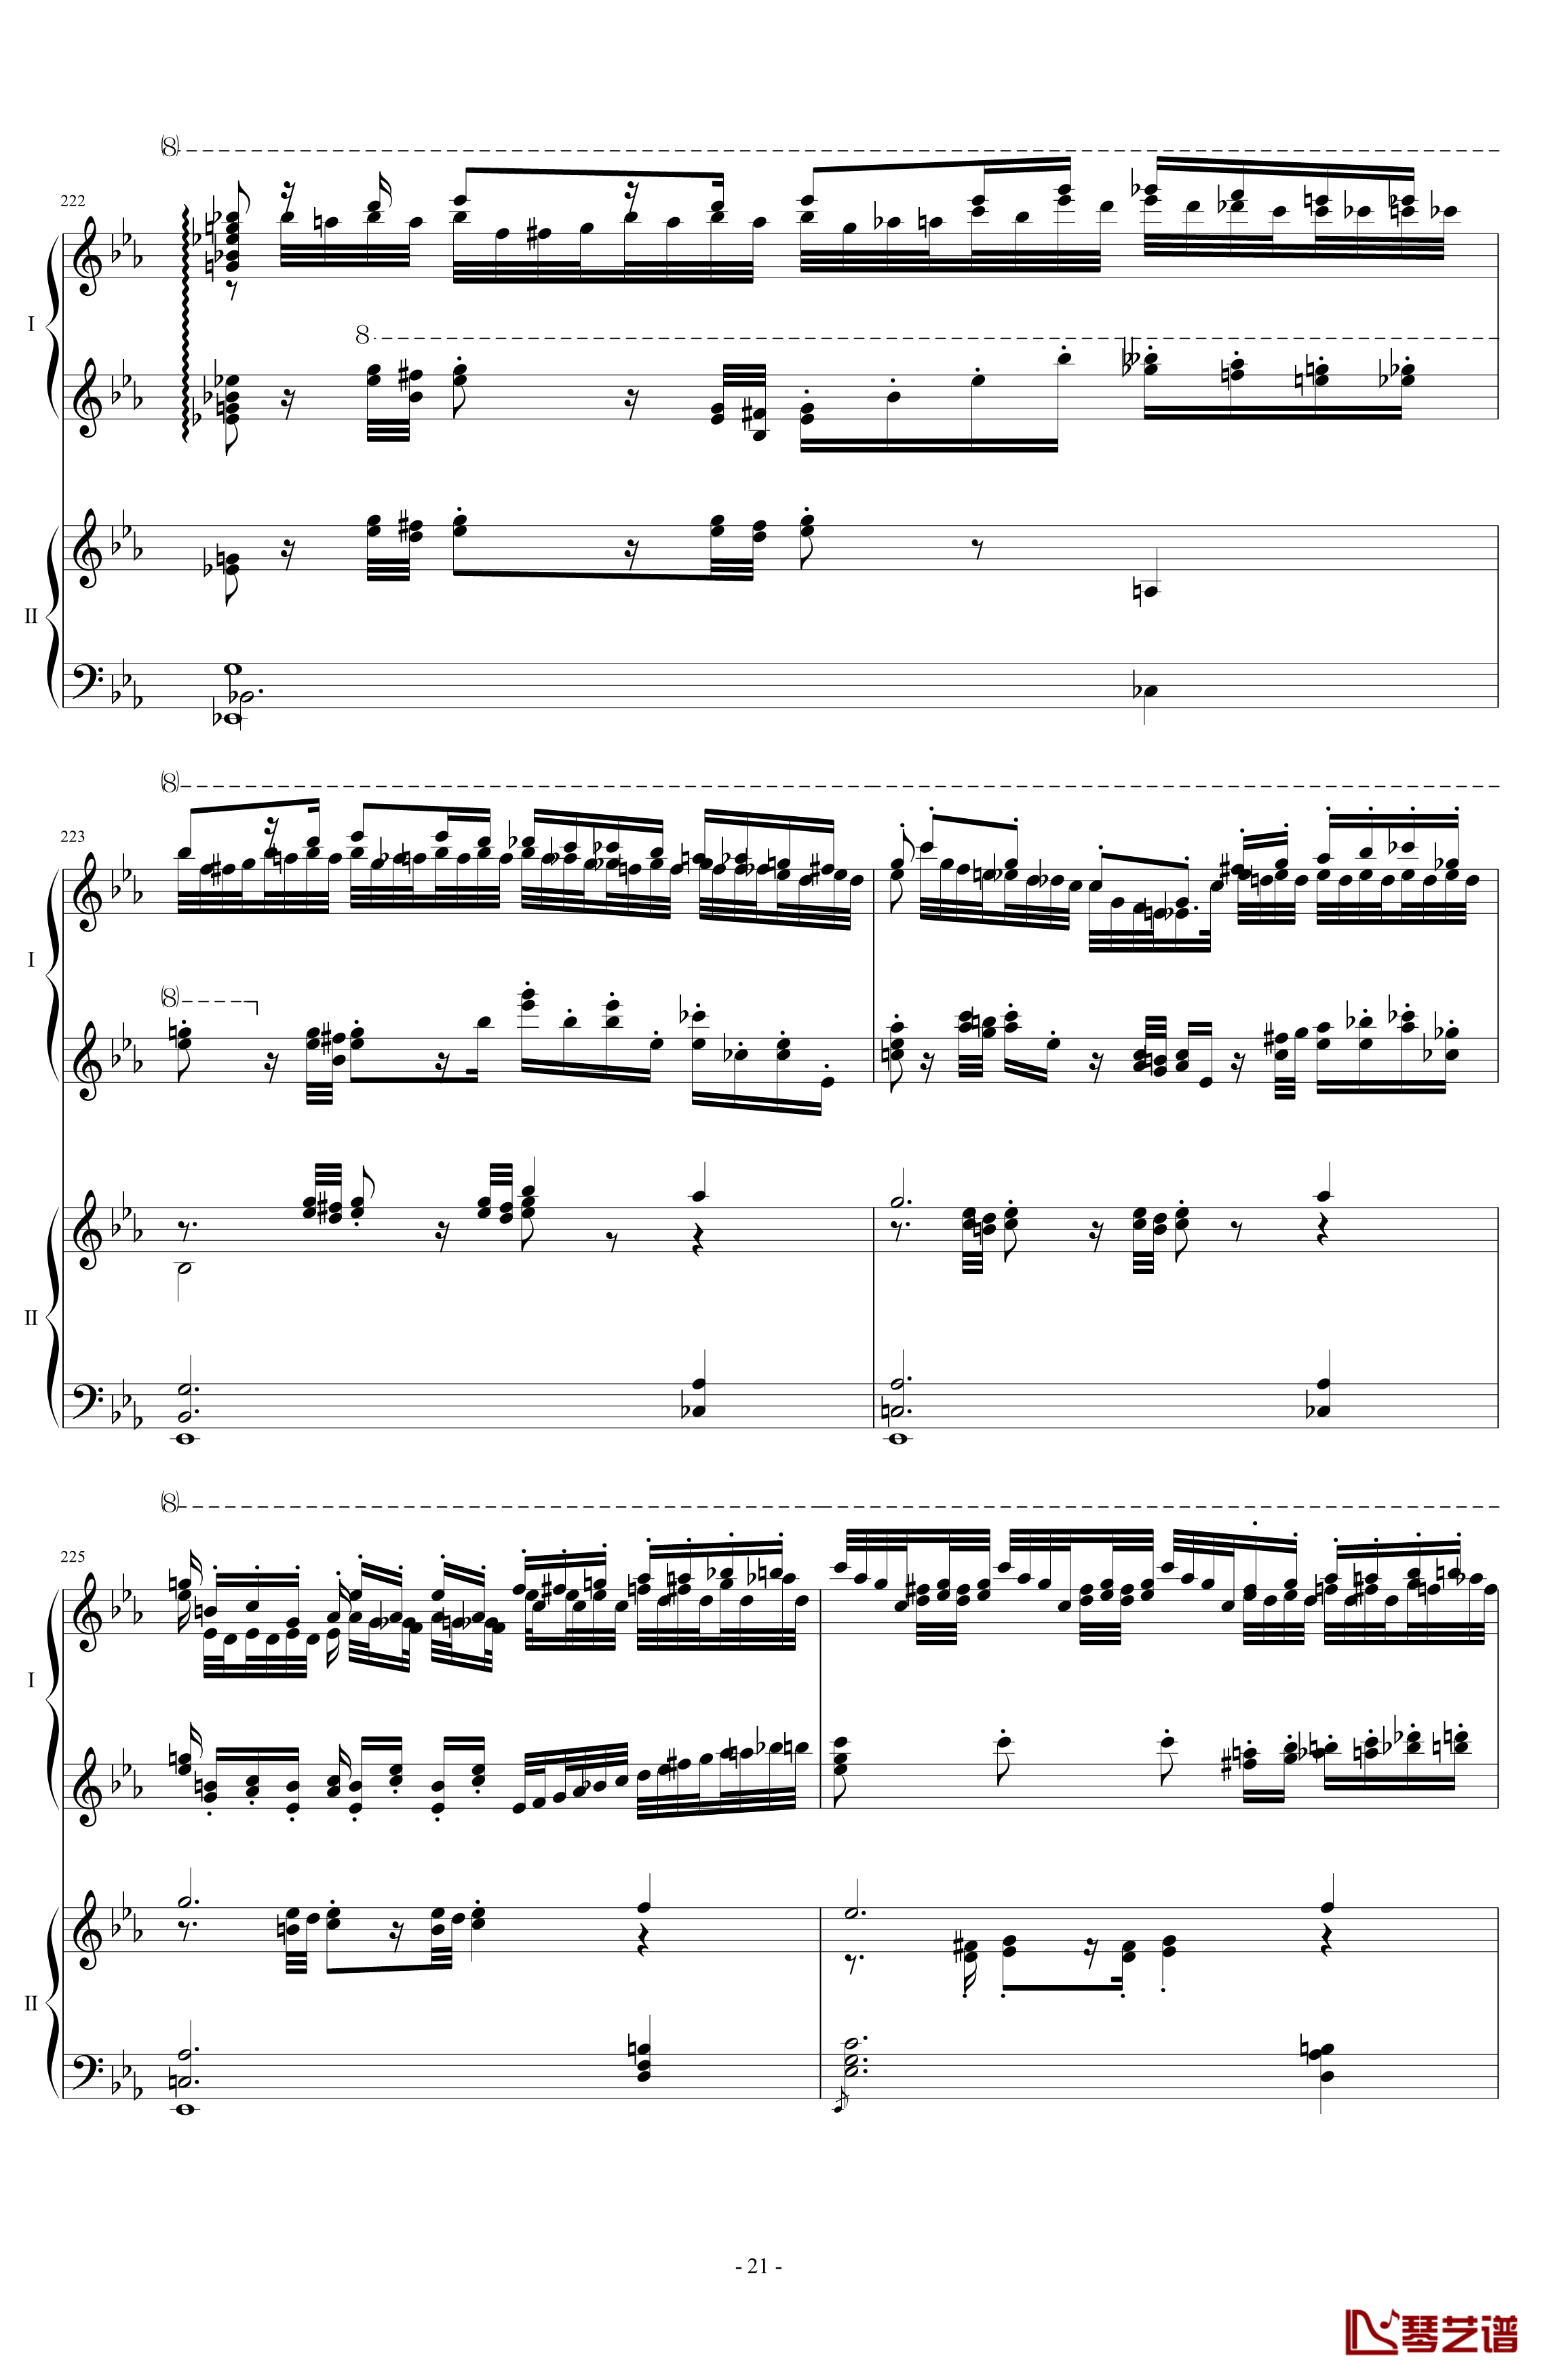 拉三第三乐章41页双钢琴钢琴谱-最难钢琴曲-拉赫马尼若夫21